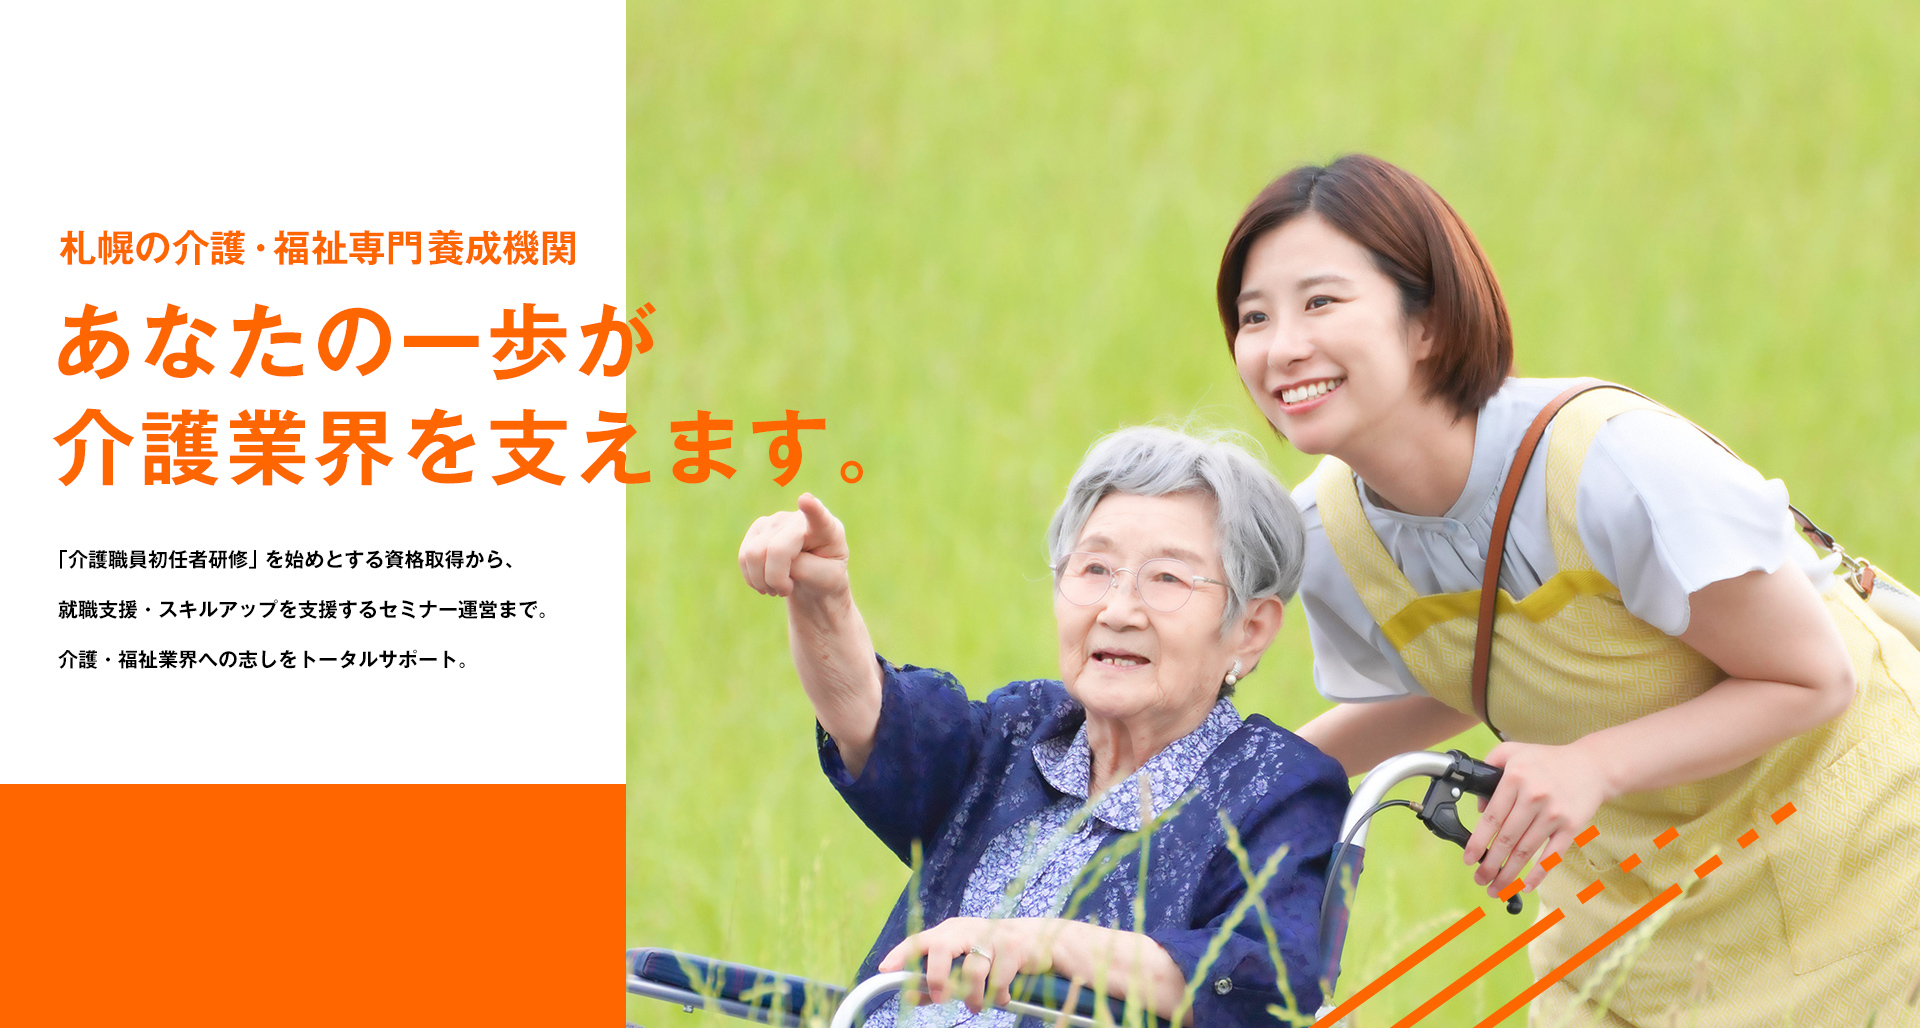 札幌の介護・福祉専門養成機関 あなたの一歩が介護業界を支えます。「介護職員初任者研修」を始めとする資格取得から、就職支援・スキルアップを支援するセミナー運営まで。介護・福祉業界への志しをトータルサポート。